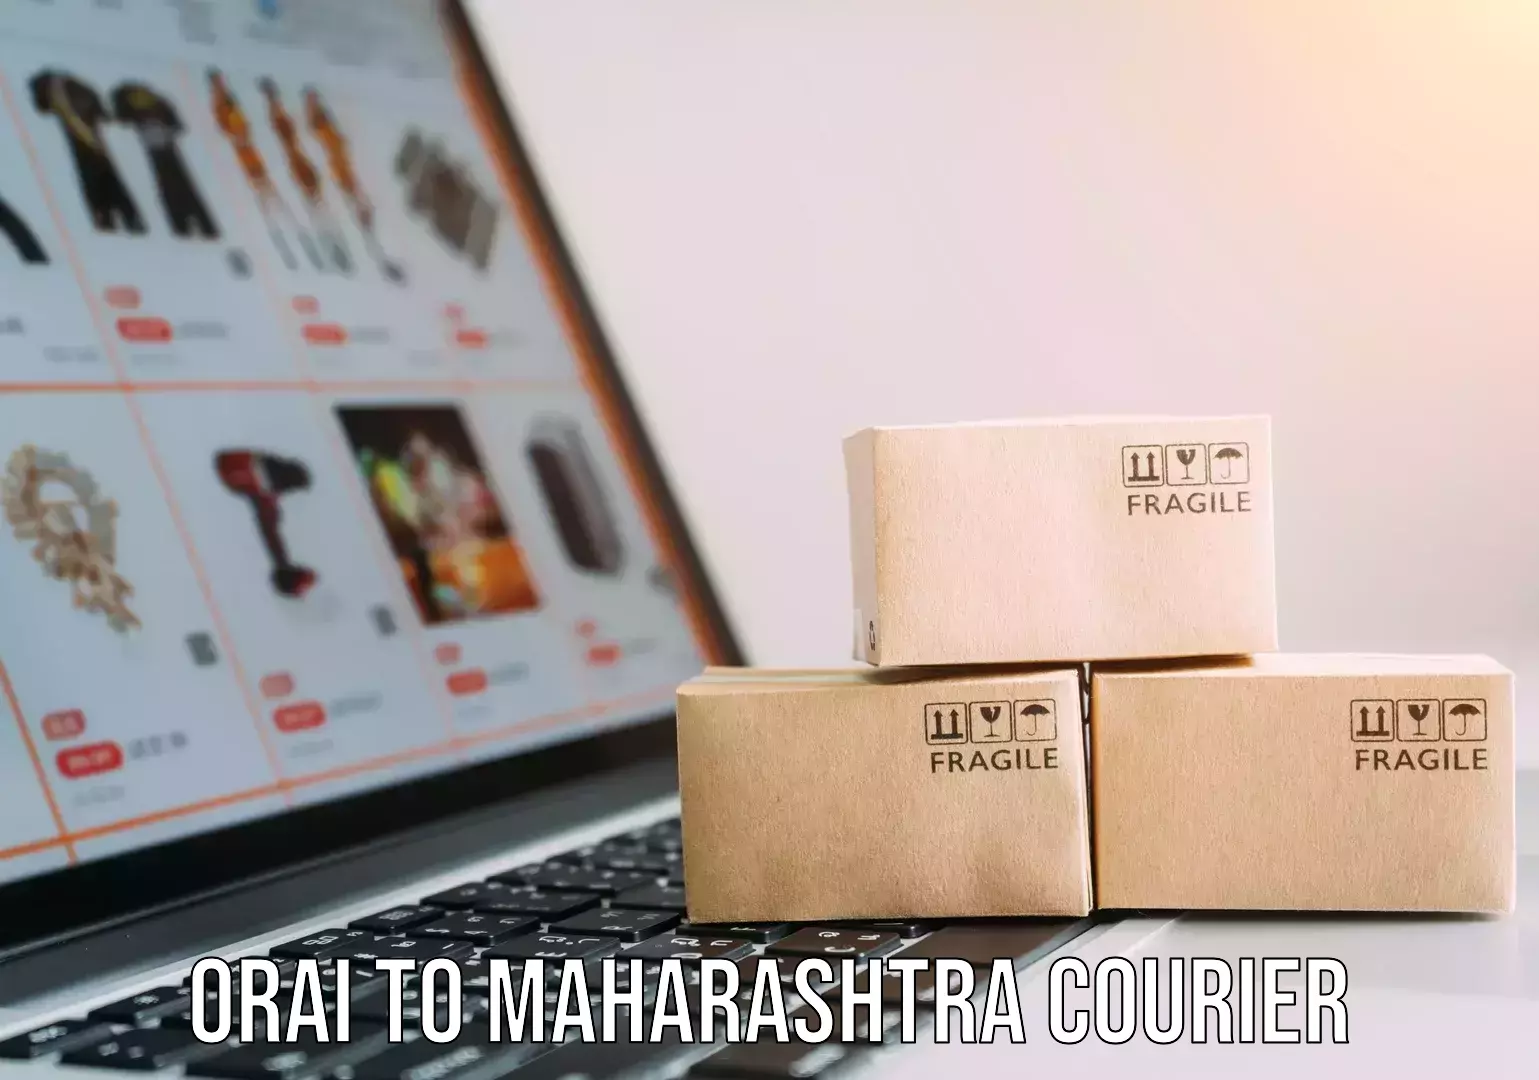 Professional furniture movers in Orai to Maharashtra